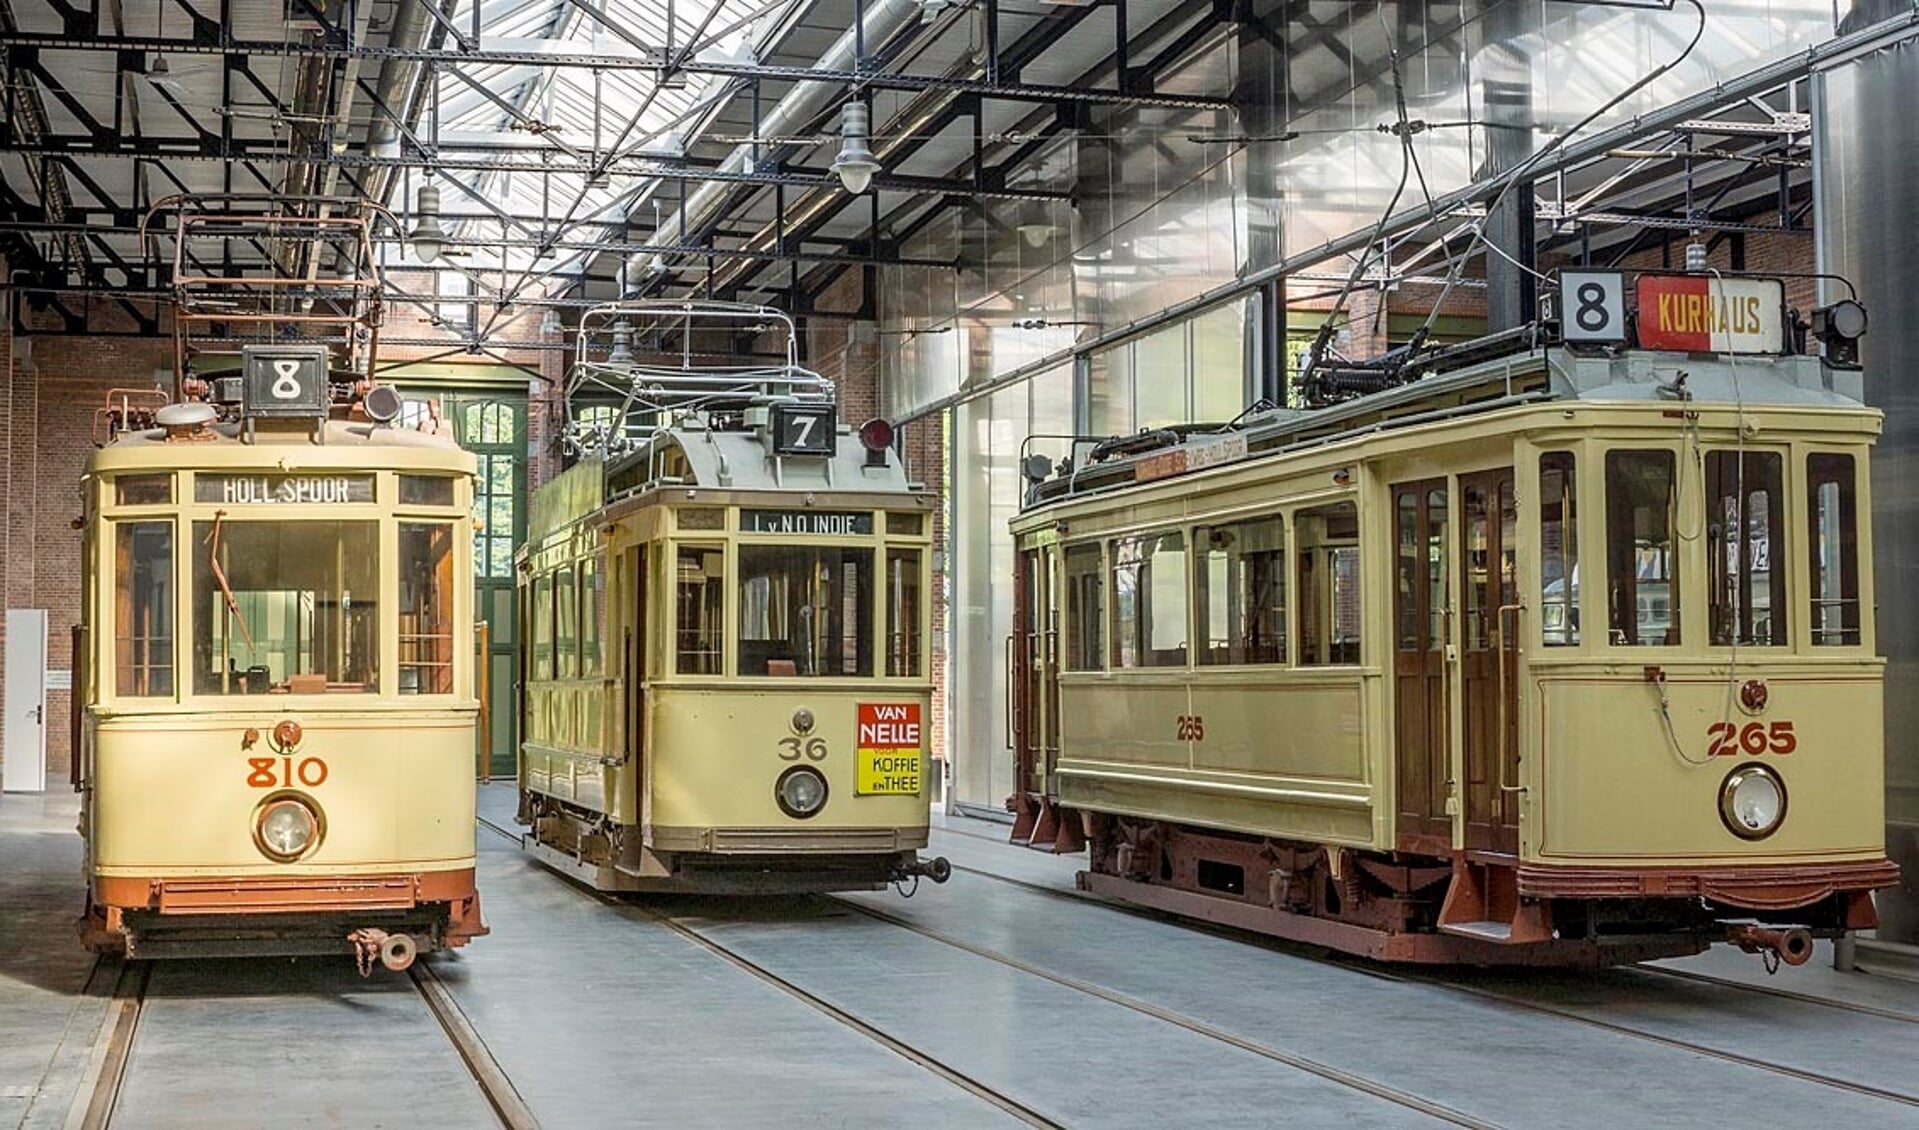 De historische tram die zondag met cultuur aan boord door Den Haag rijdt.